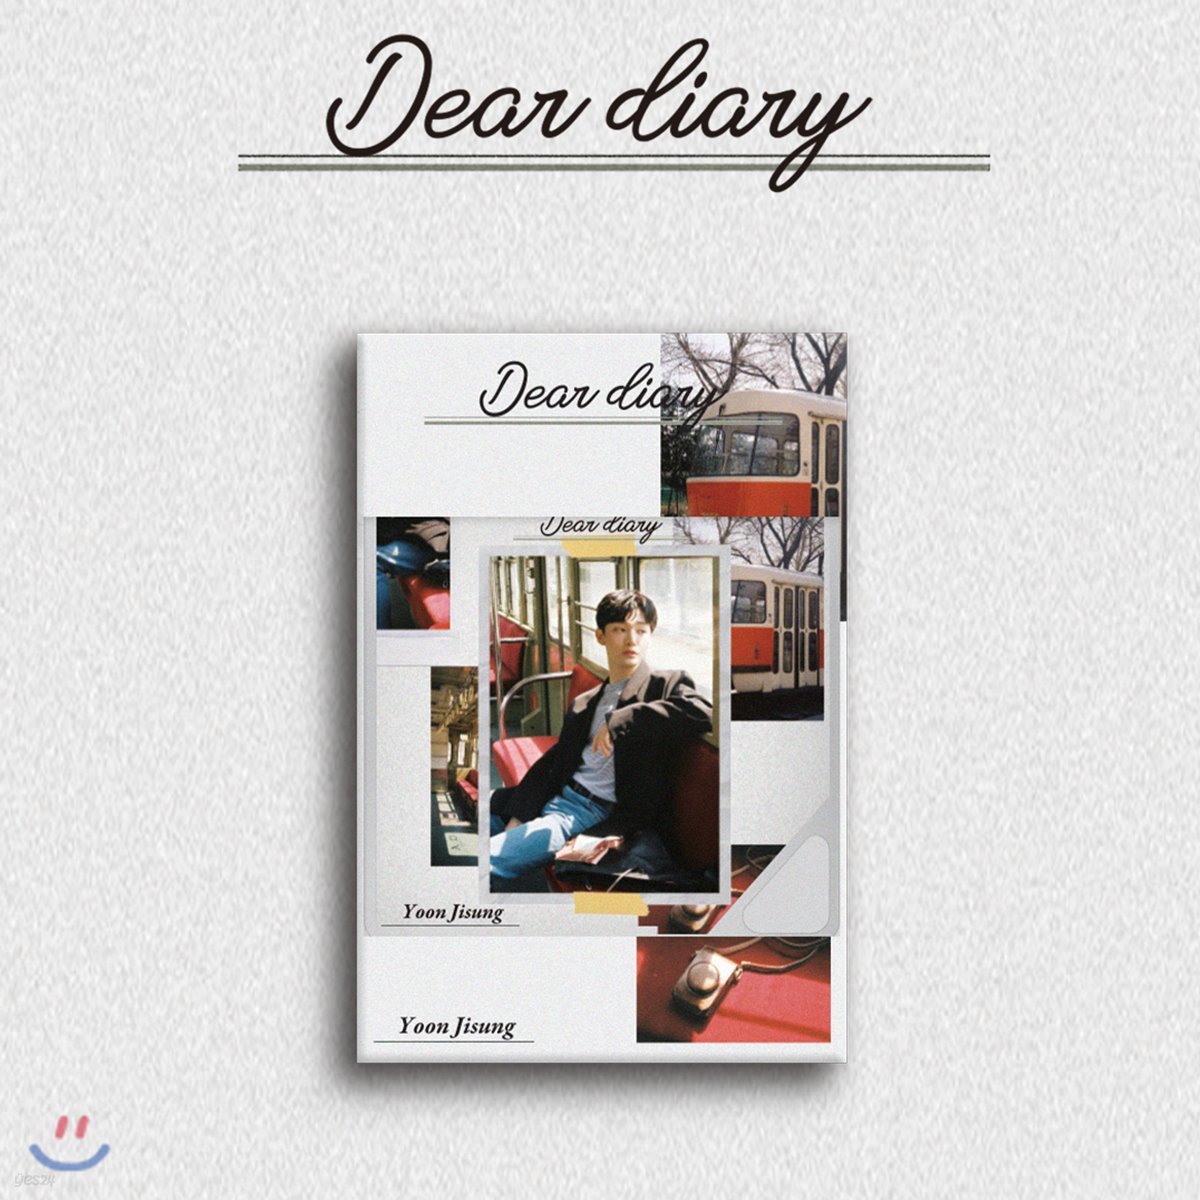 윤지성 - 스페셜 앨범 : Dear diary [스마트 뮤직 앨범(키노 앨범)]